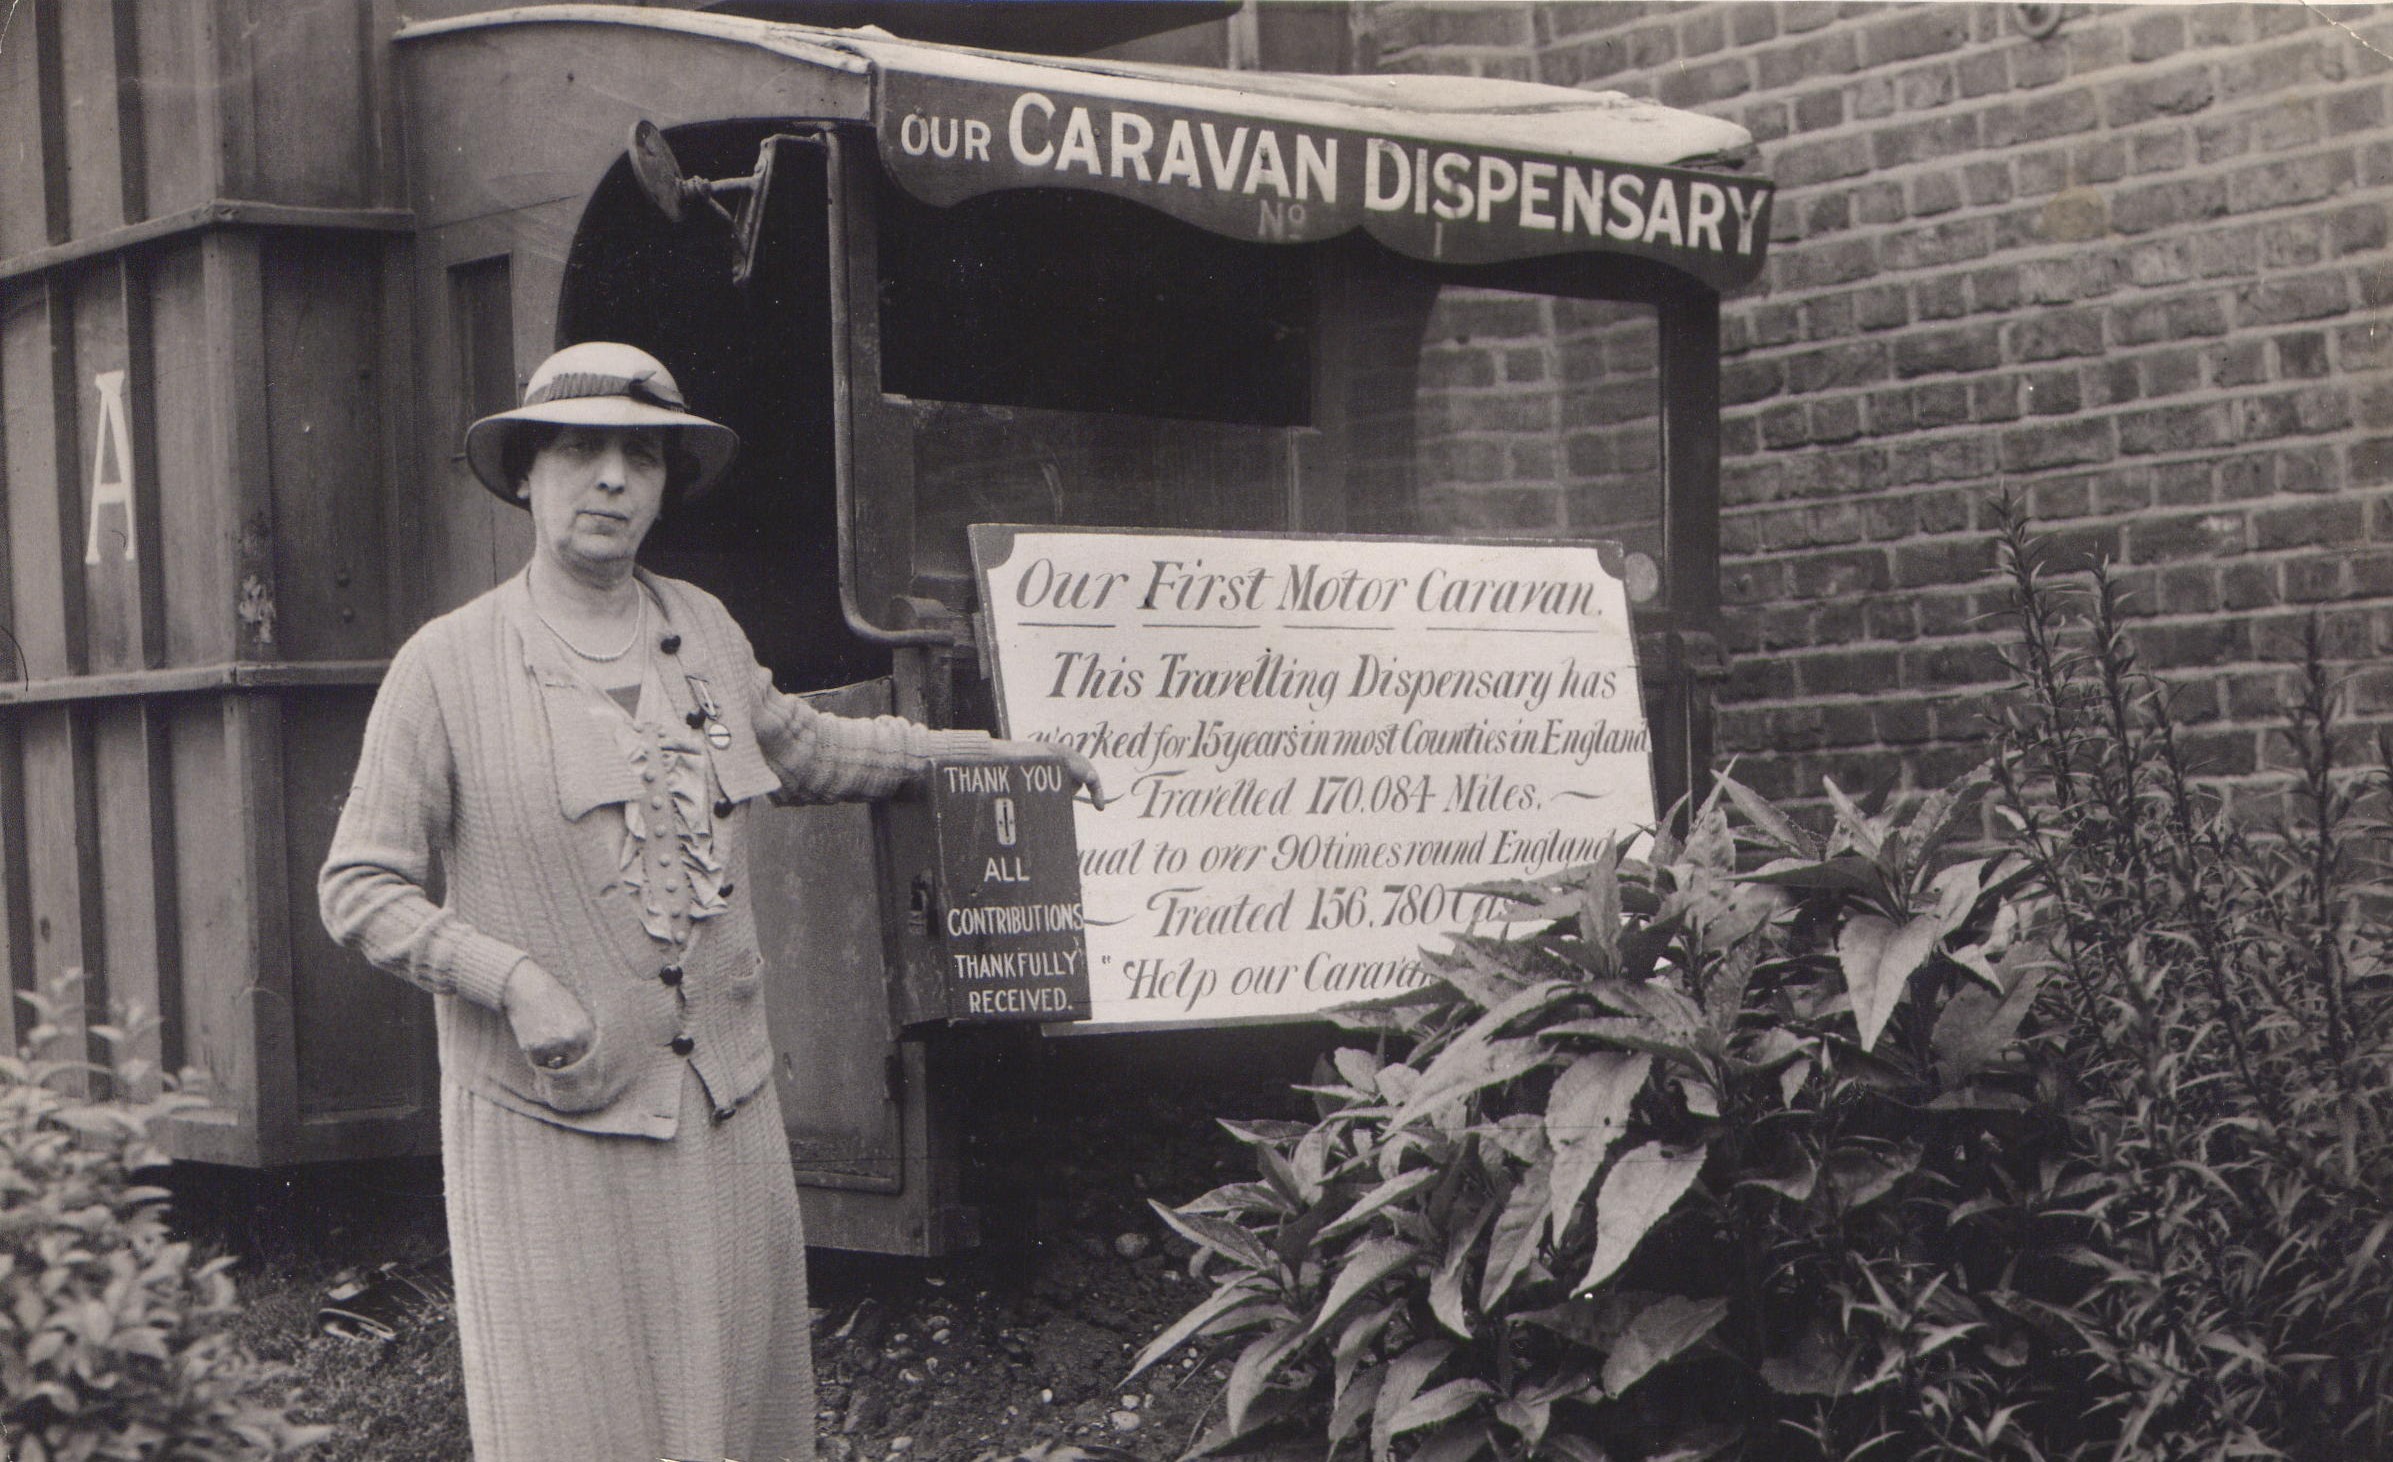 Maria Dickin stands next to a PDSA caravan dispensary